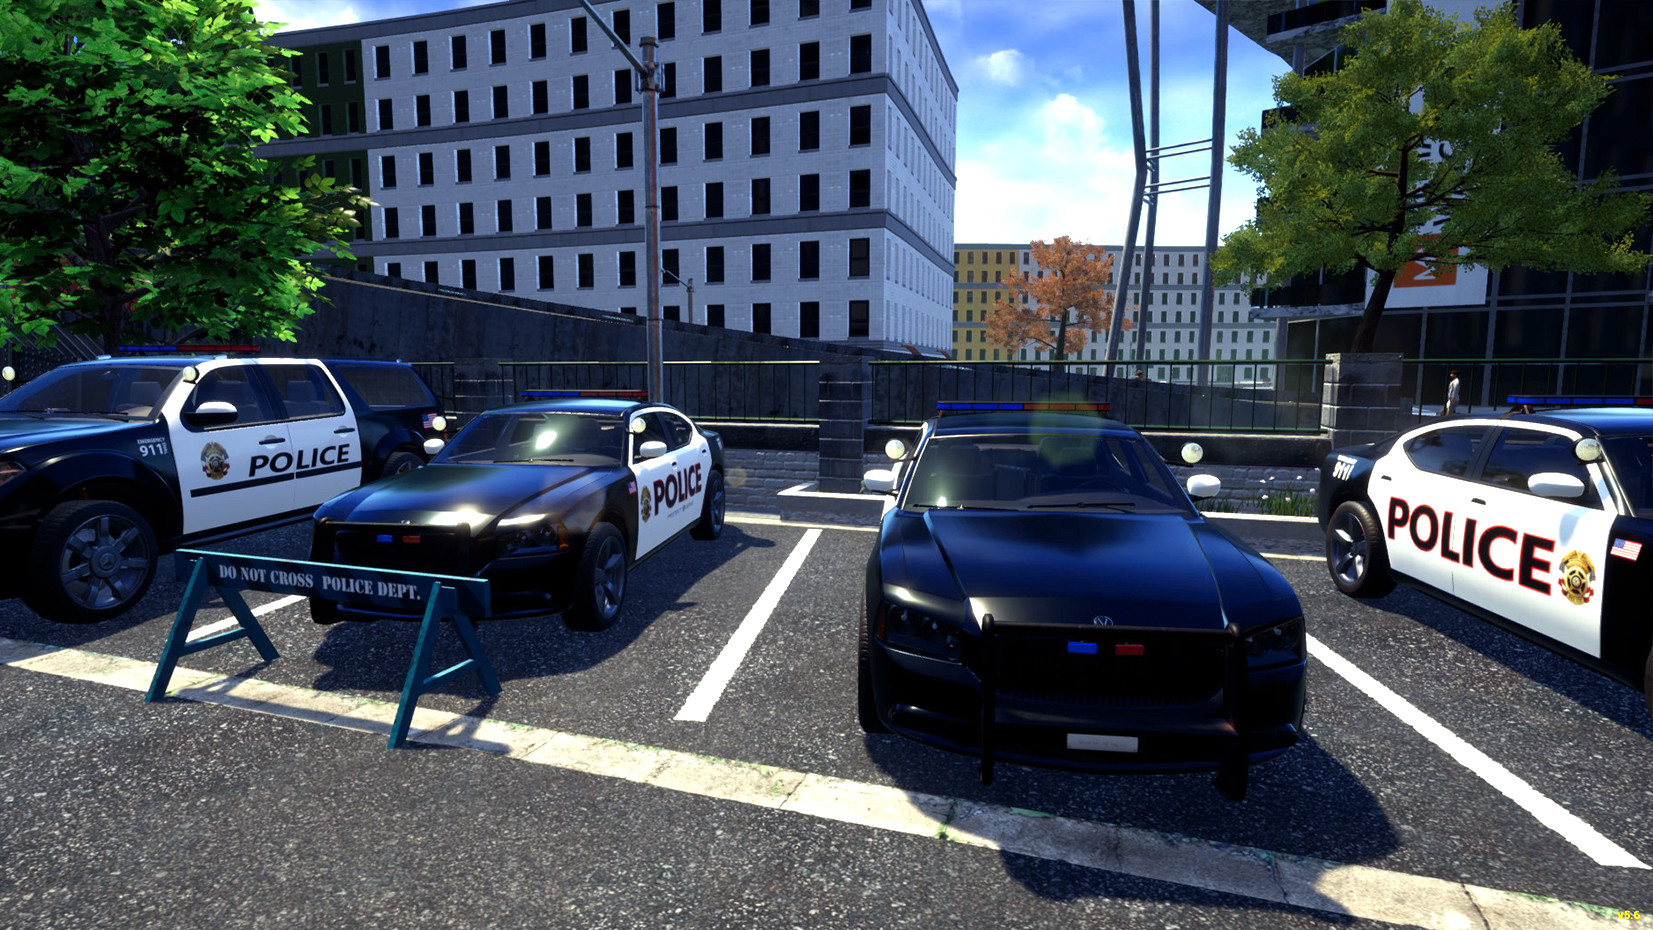 Police Simulator: Patrol Duty on Steam